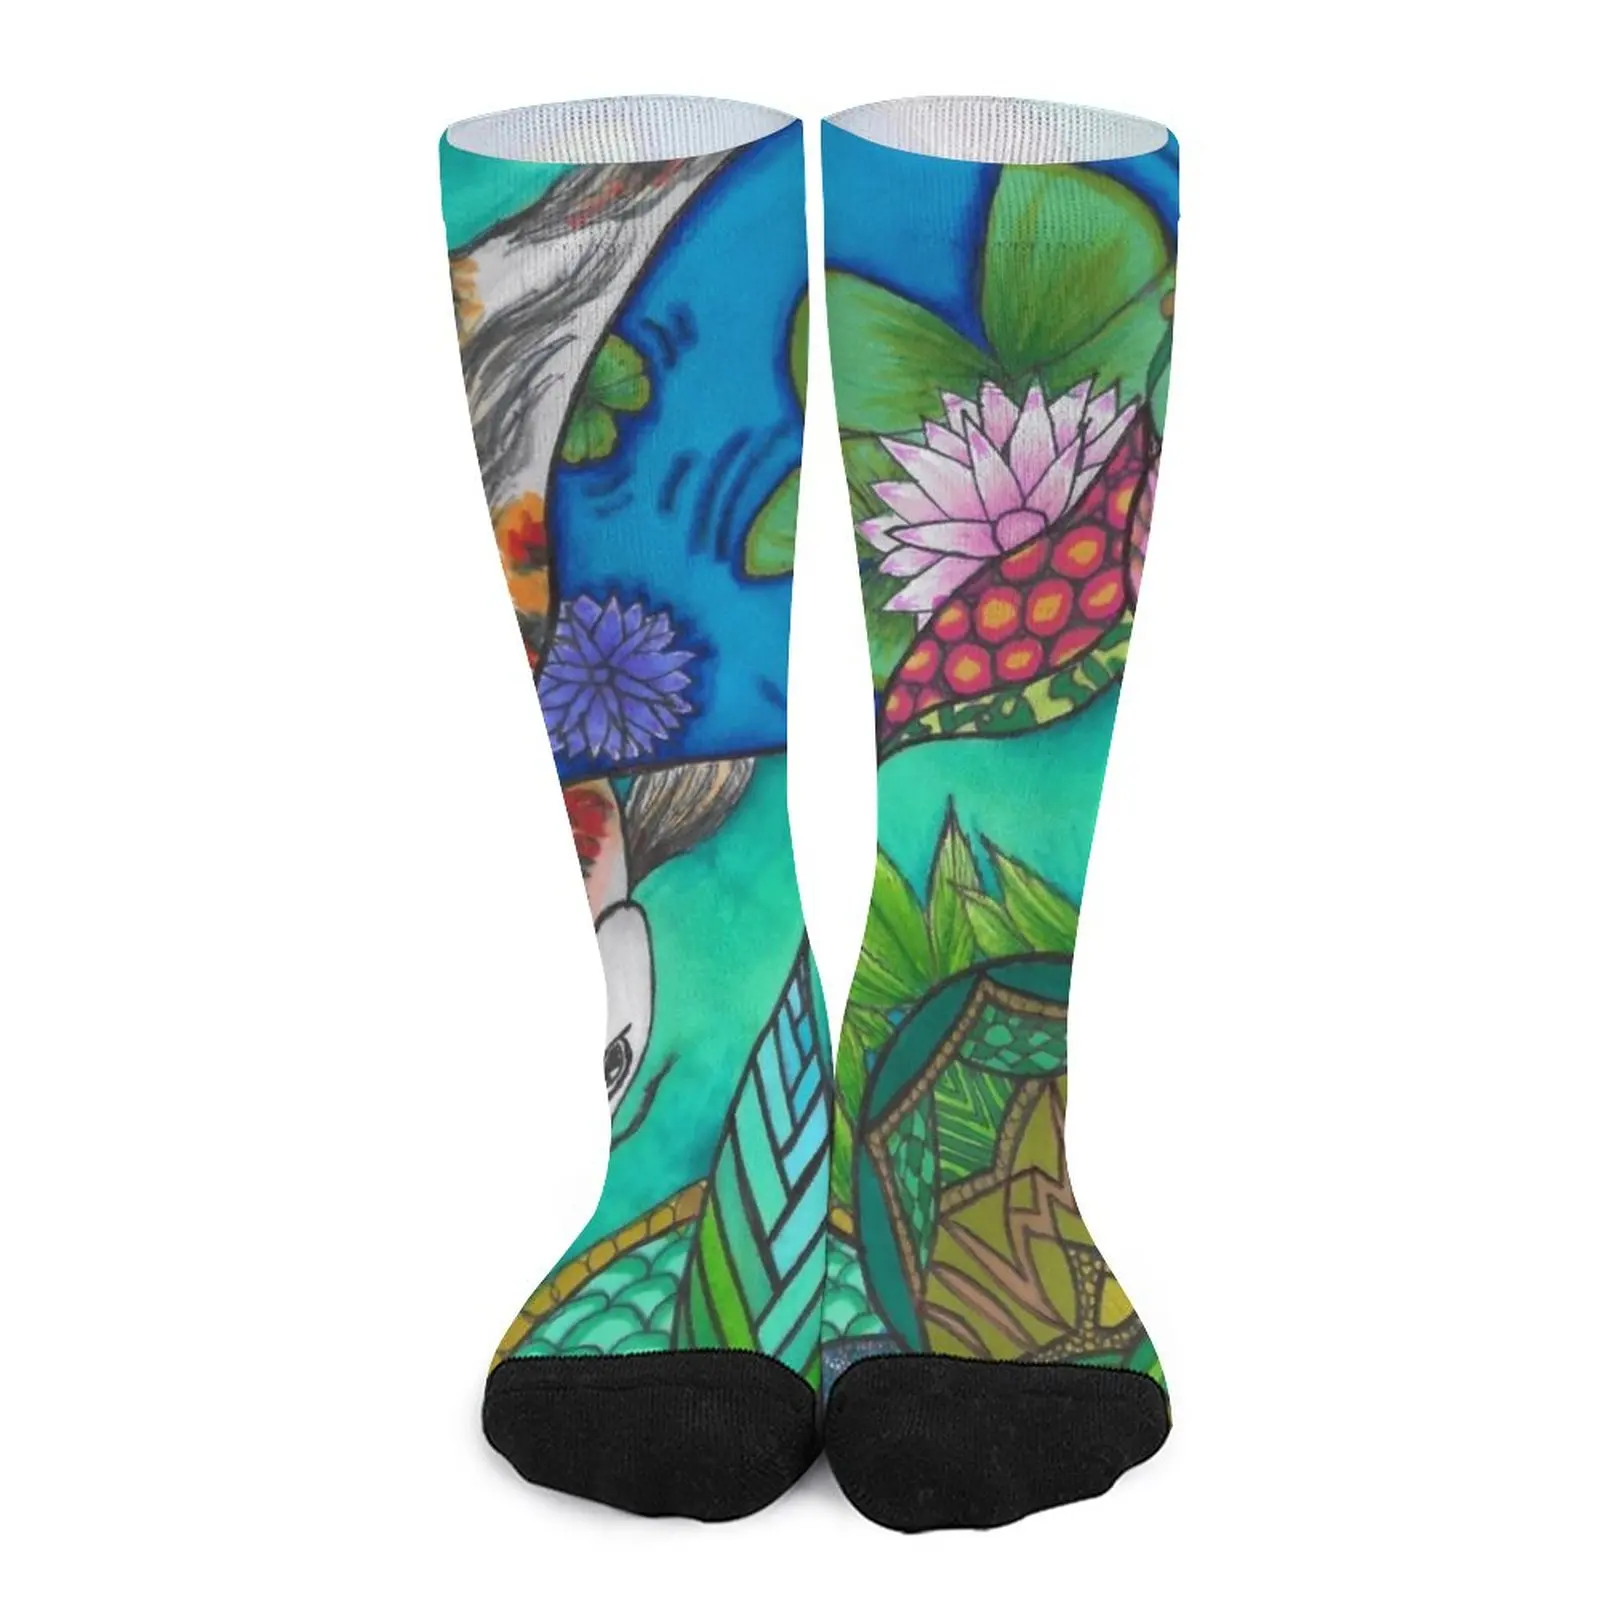 new wholesale Koi Design Socks stockings for men Wholesale socks for men new in Men's socks